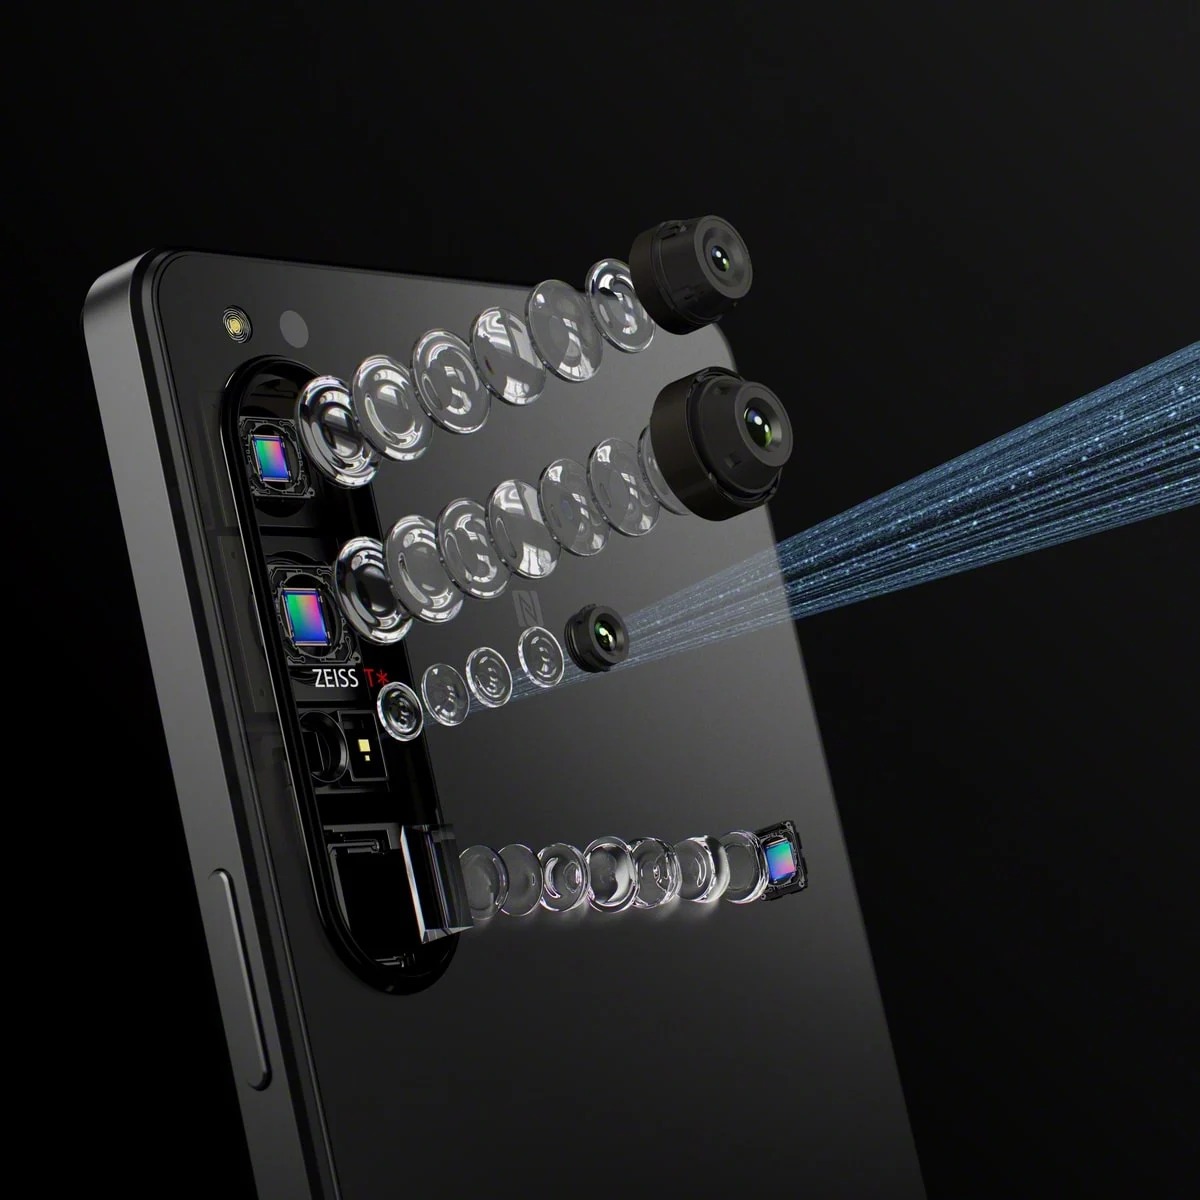 Sony ra mắt Xperia 1 IV với khả năng zoom xa quang học toàn dải từ 85-125mm